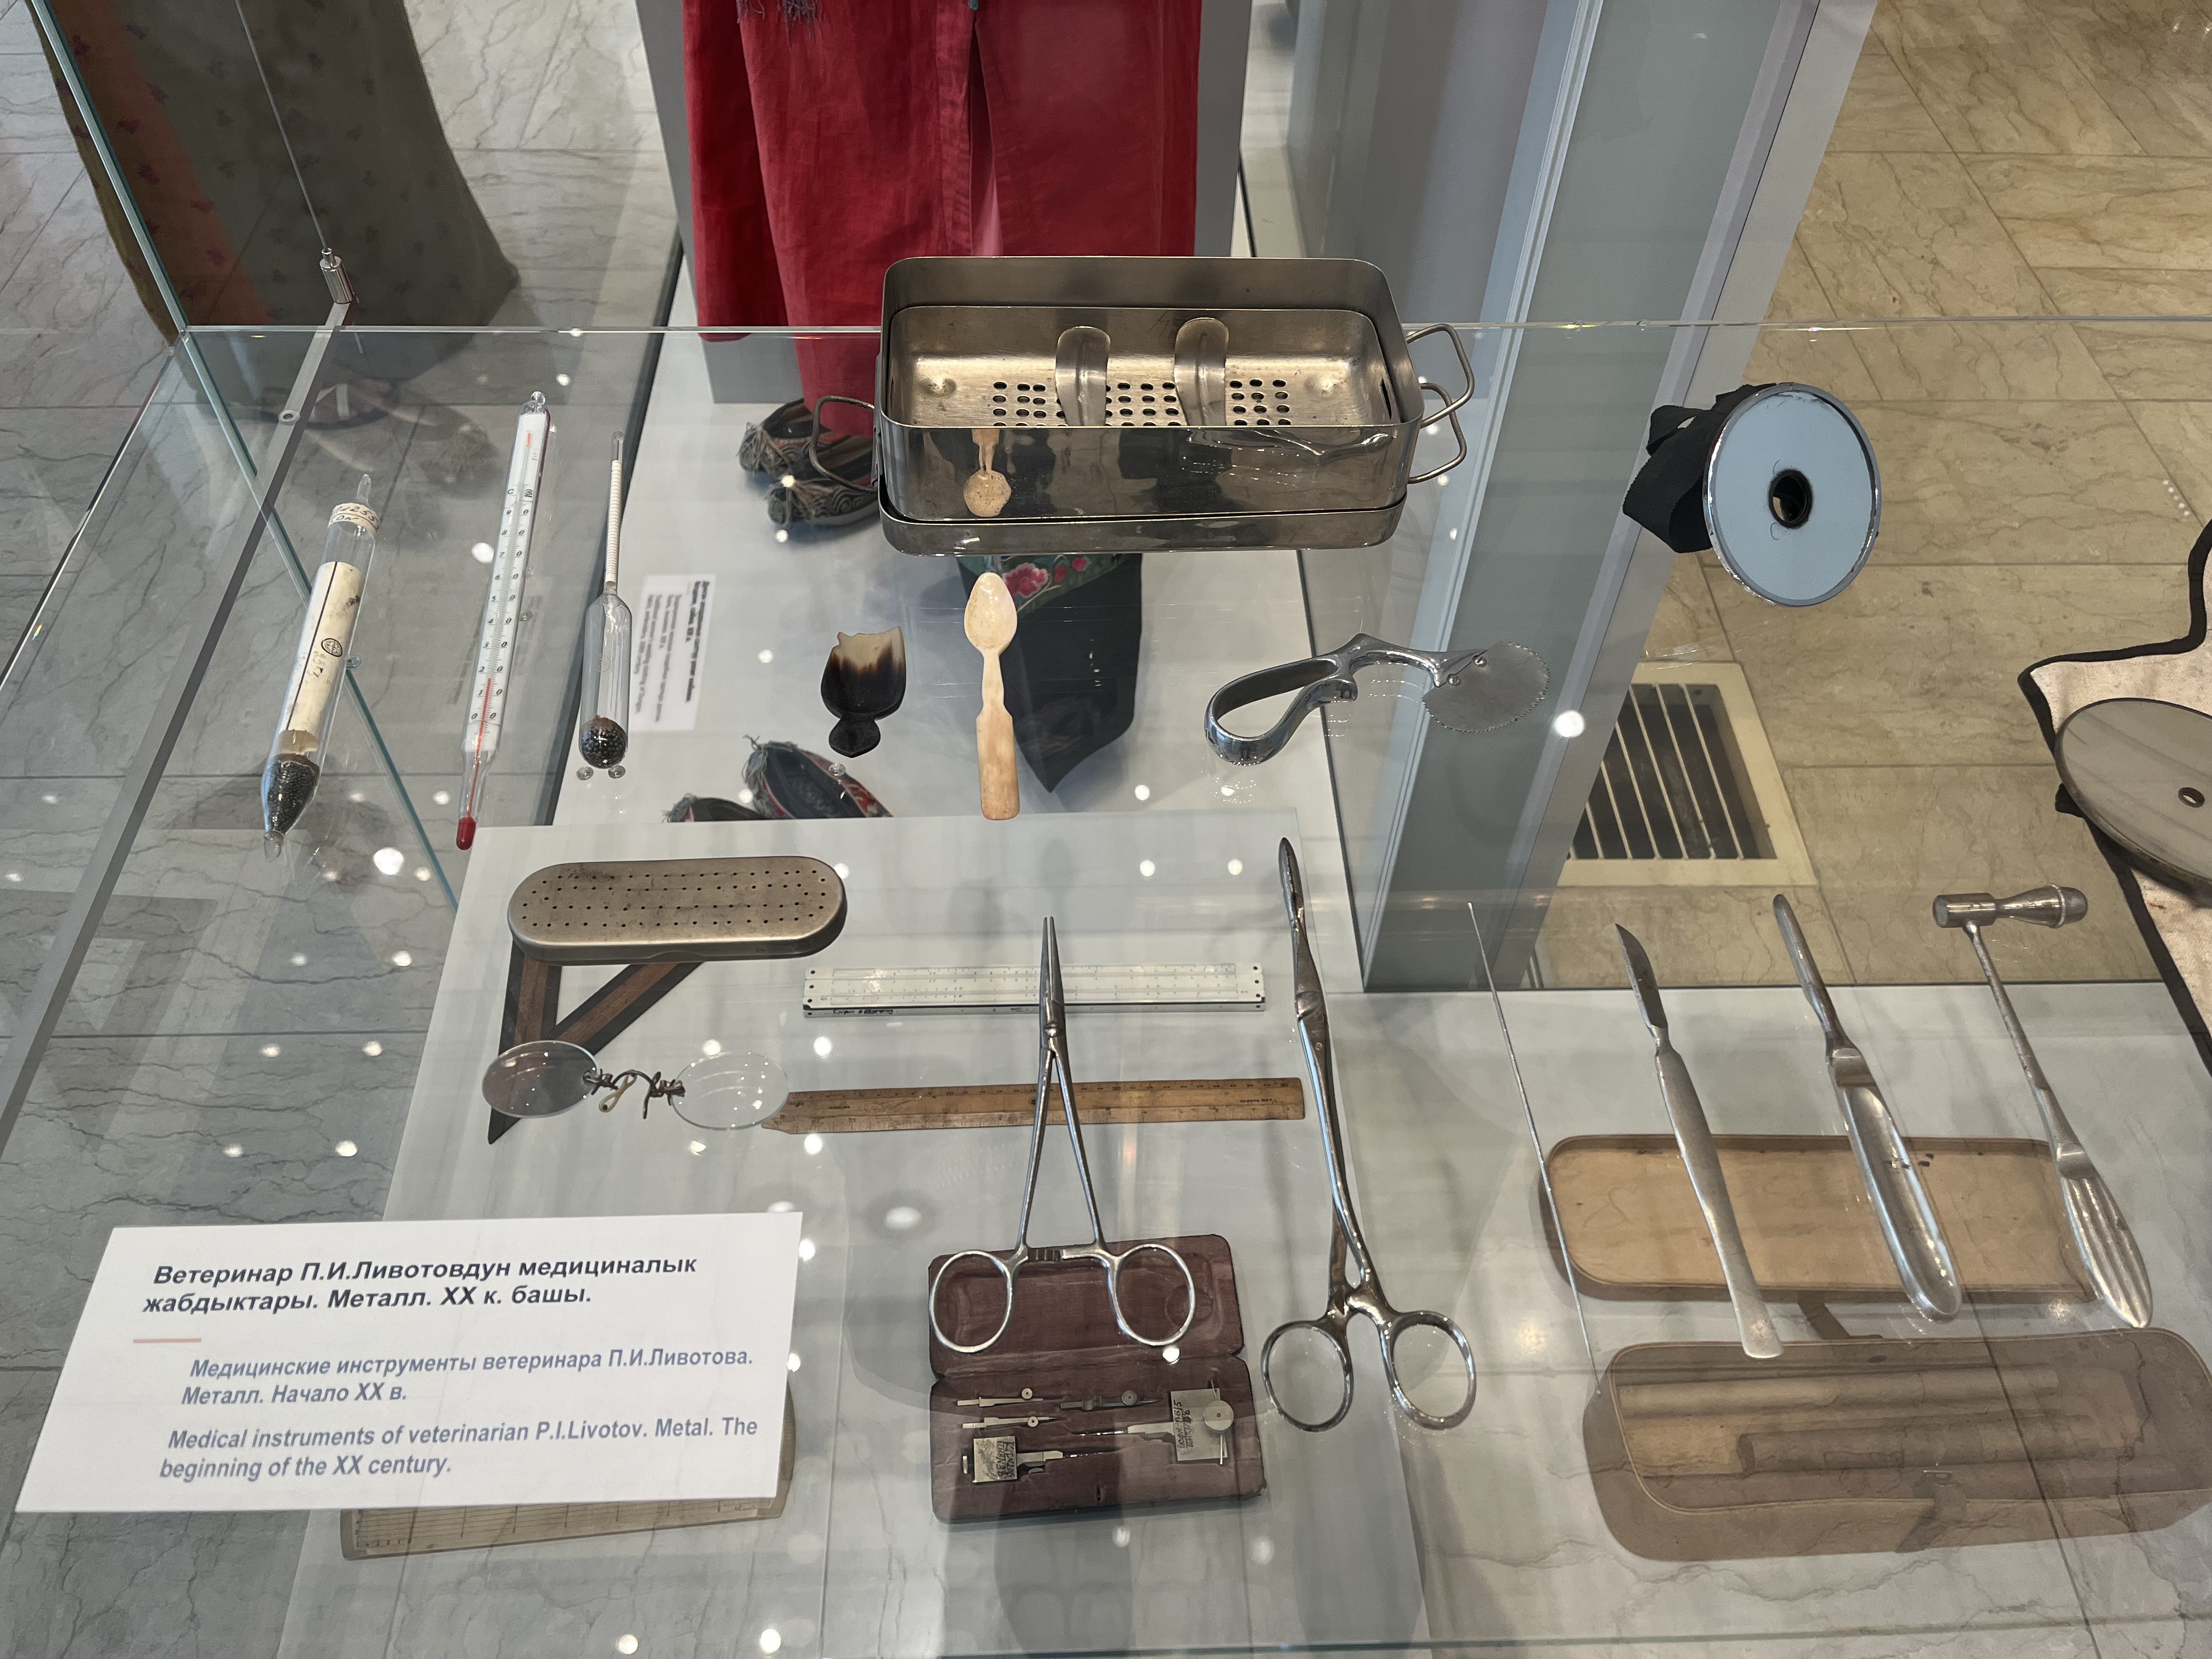 キルギス共和国の国立歴史博物館に展示されている20世紀初頭のロシア人医師の医療器具（宮崎撮影）。当時、この地域はロシア帝国に組み込まれていました。